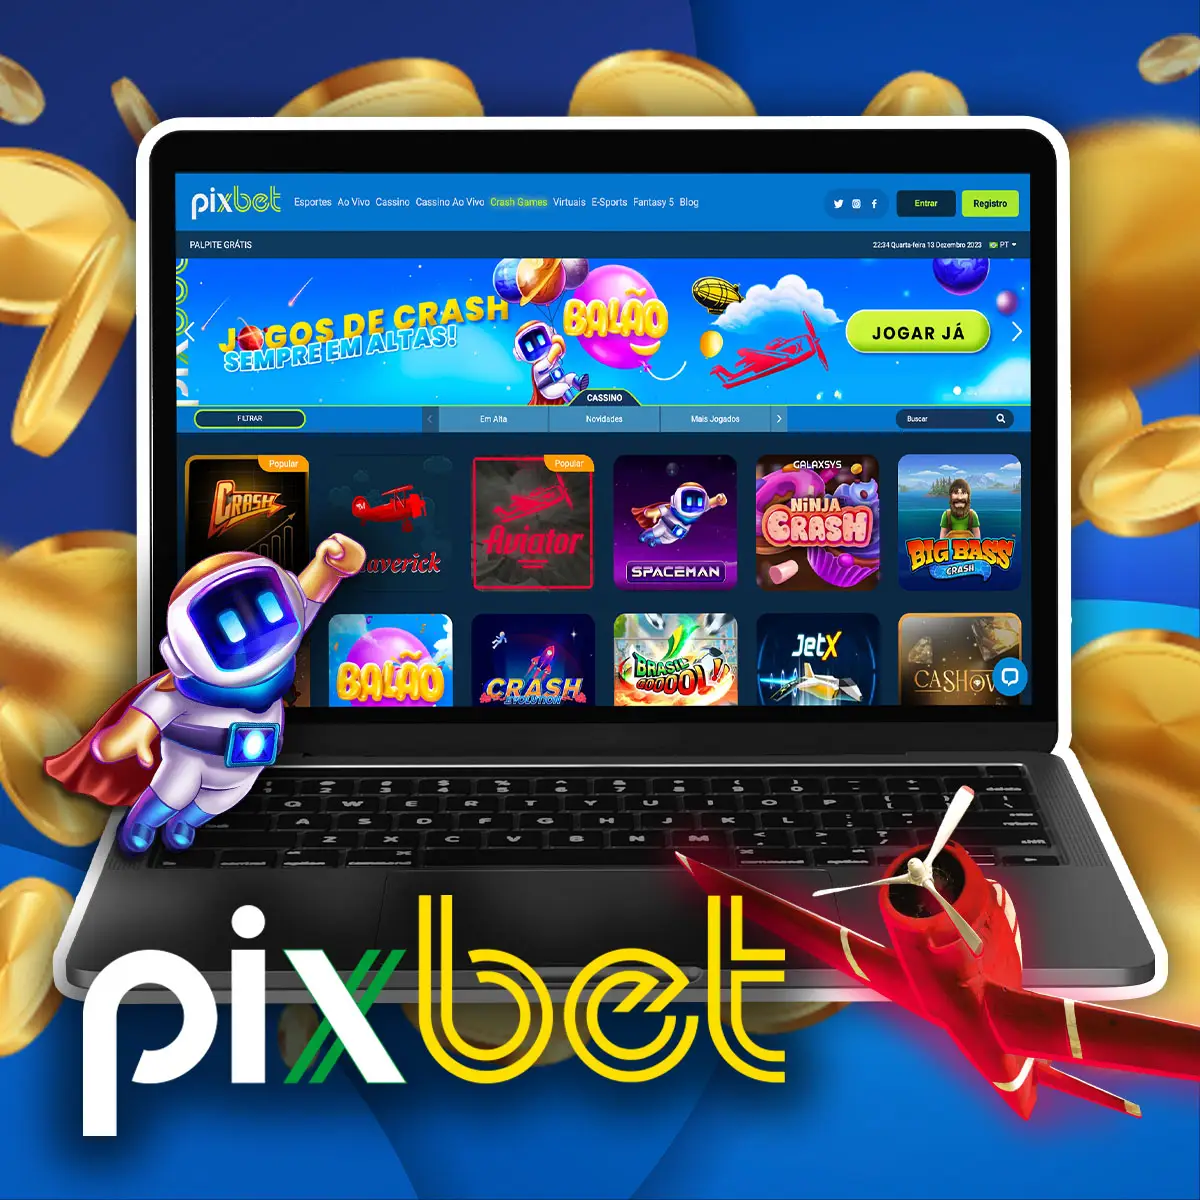 Os Crash Games Pixbet estão entre os melhores jogos que você pode experimentar em nosso cassino online.